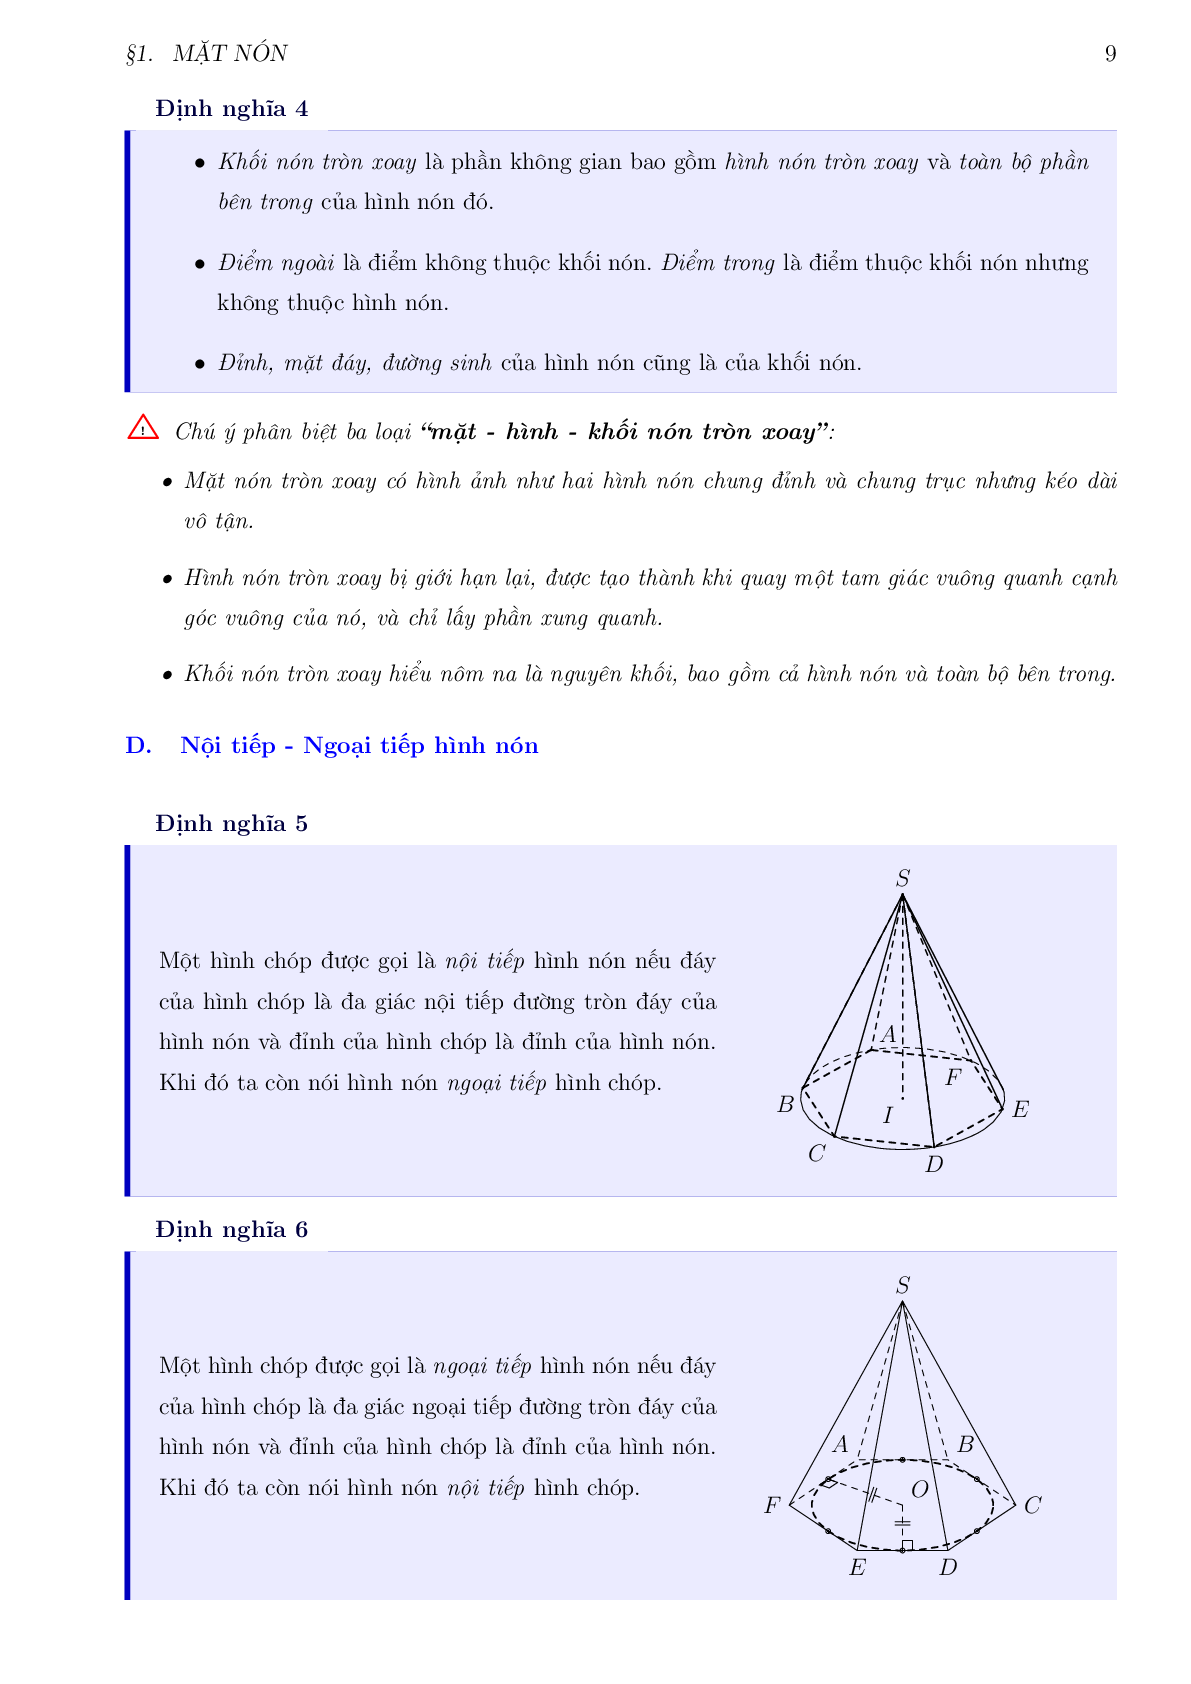 Bài tập trắc nghiệm hình học 12 chuyên đề nón - trụ -  cầu (trang 9)